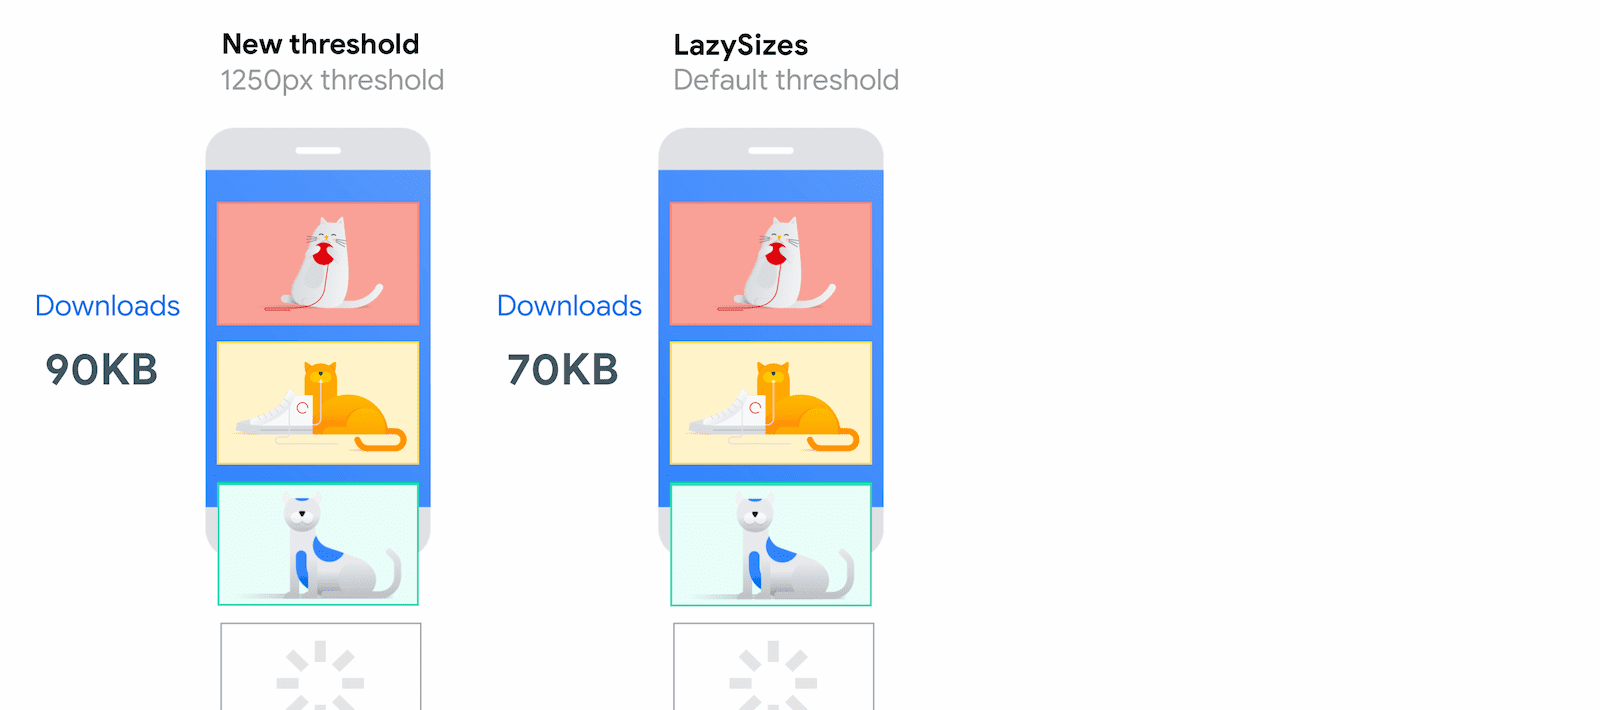 同じネットワーク条件で LazySizes が 70 KB で読み込むのに対し、Chrome では 90 KB の画像を読み込む新しいビューポートからの距離のしきい値